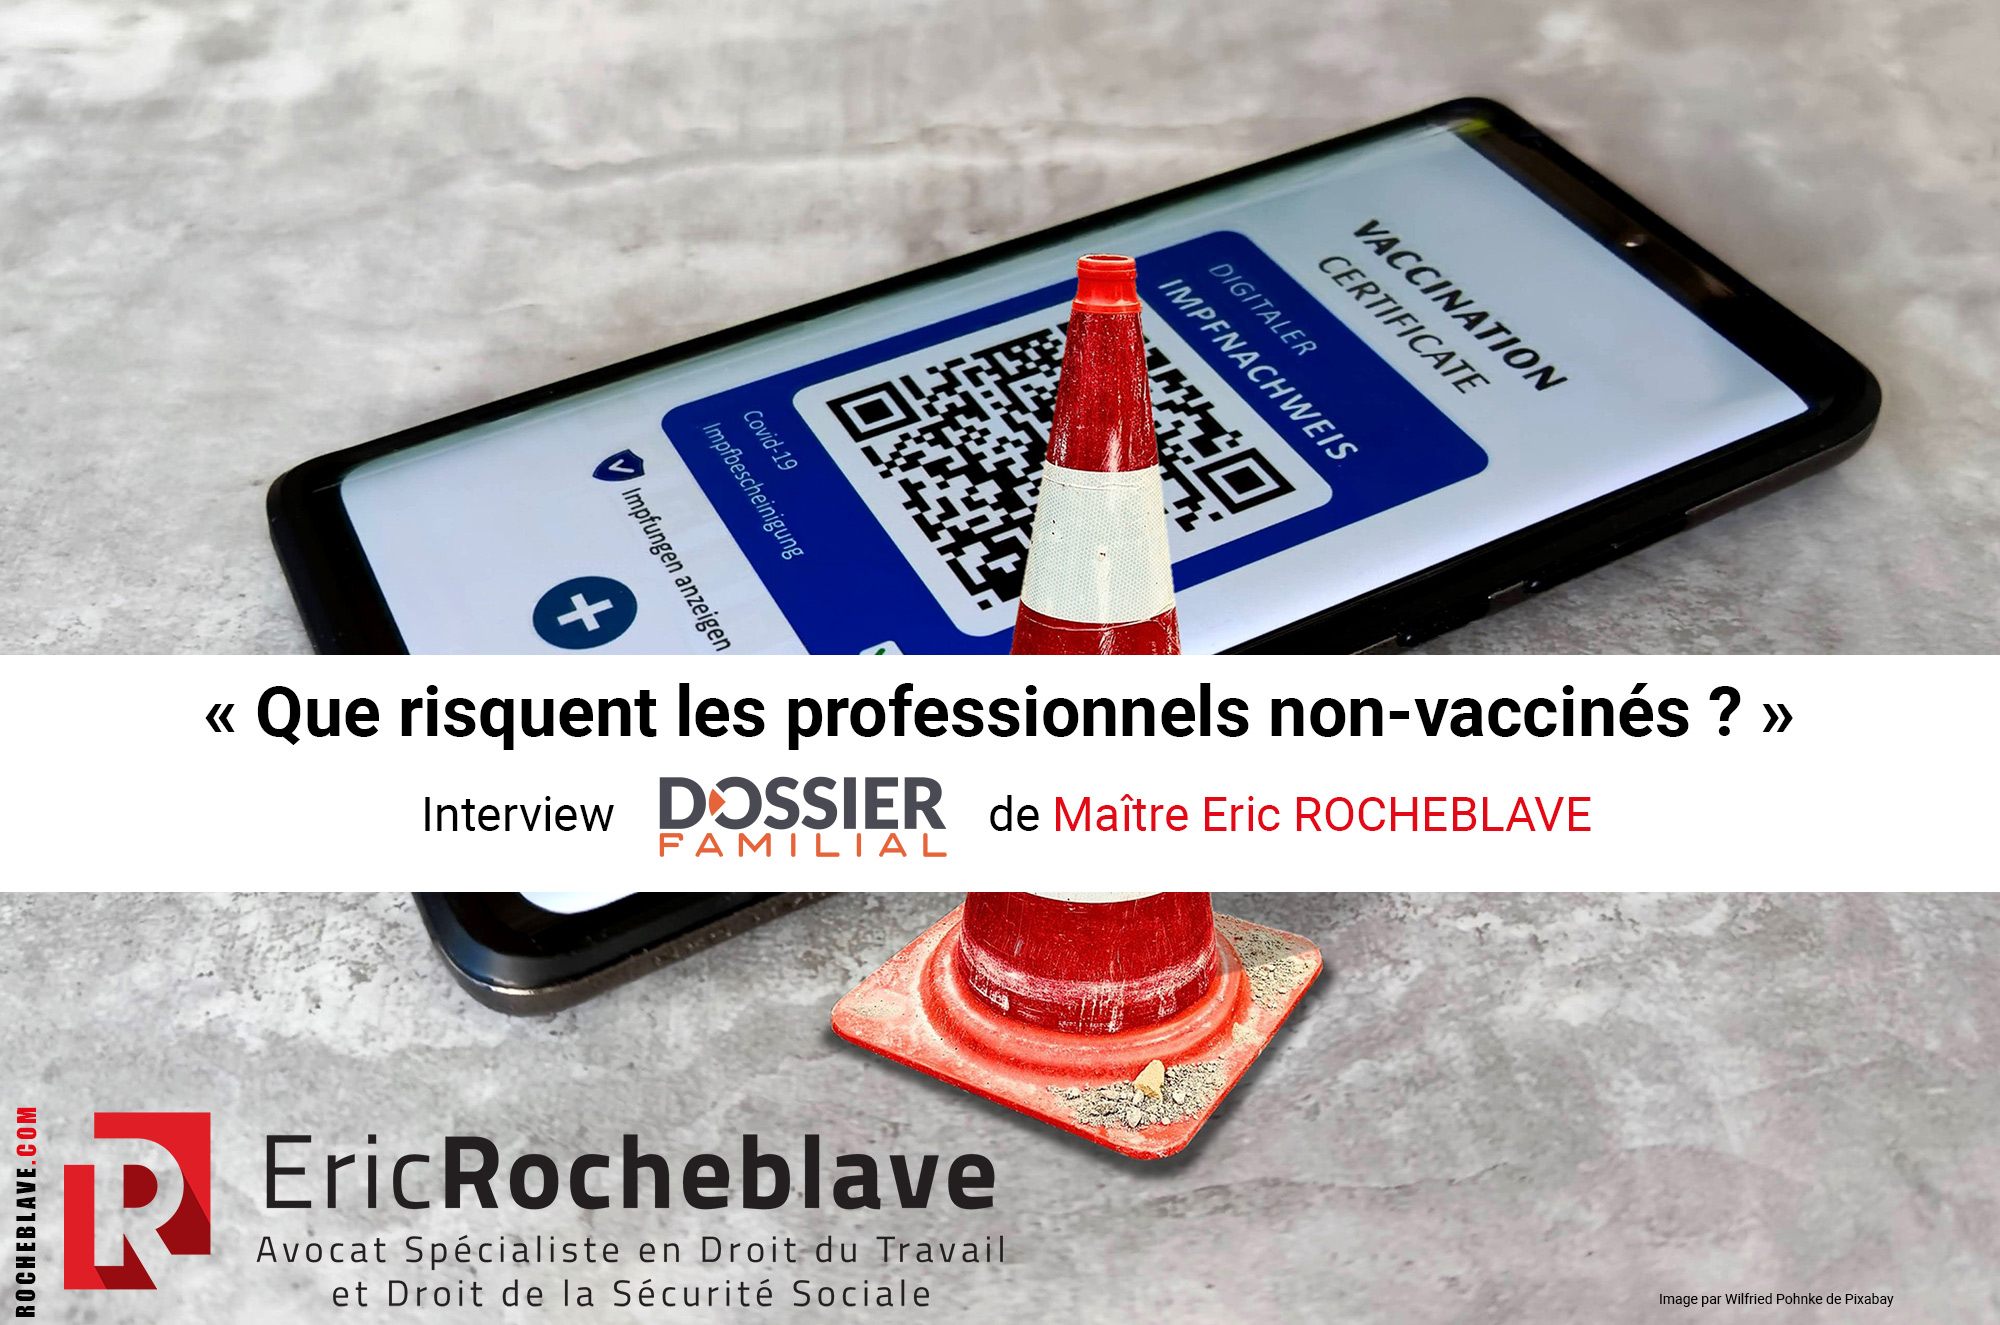 « Que risquent les professionnels non-vaccinés ? » ​Interview DOSSIER FAMILIAL de Maître Eric ROCHEBLAVE